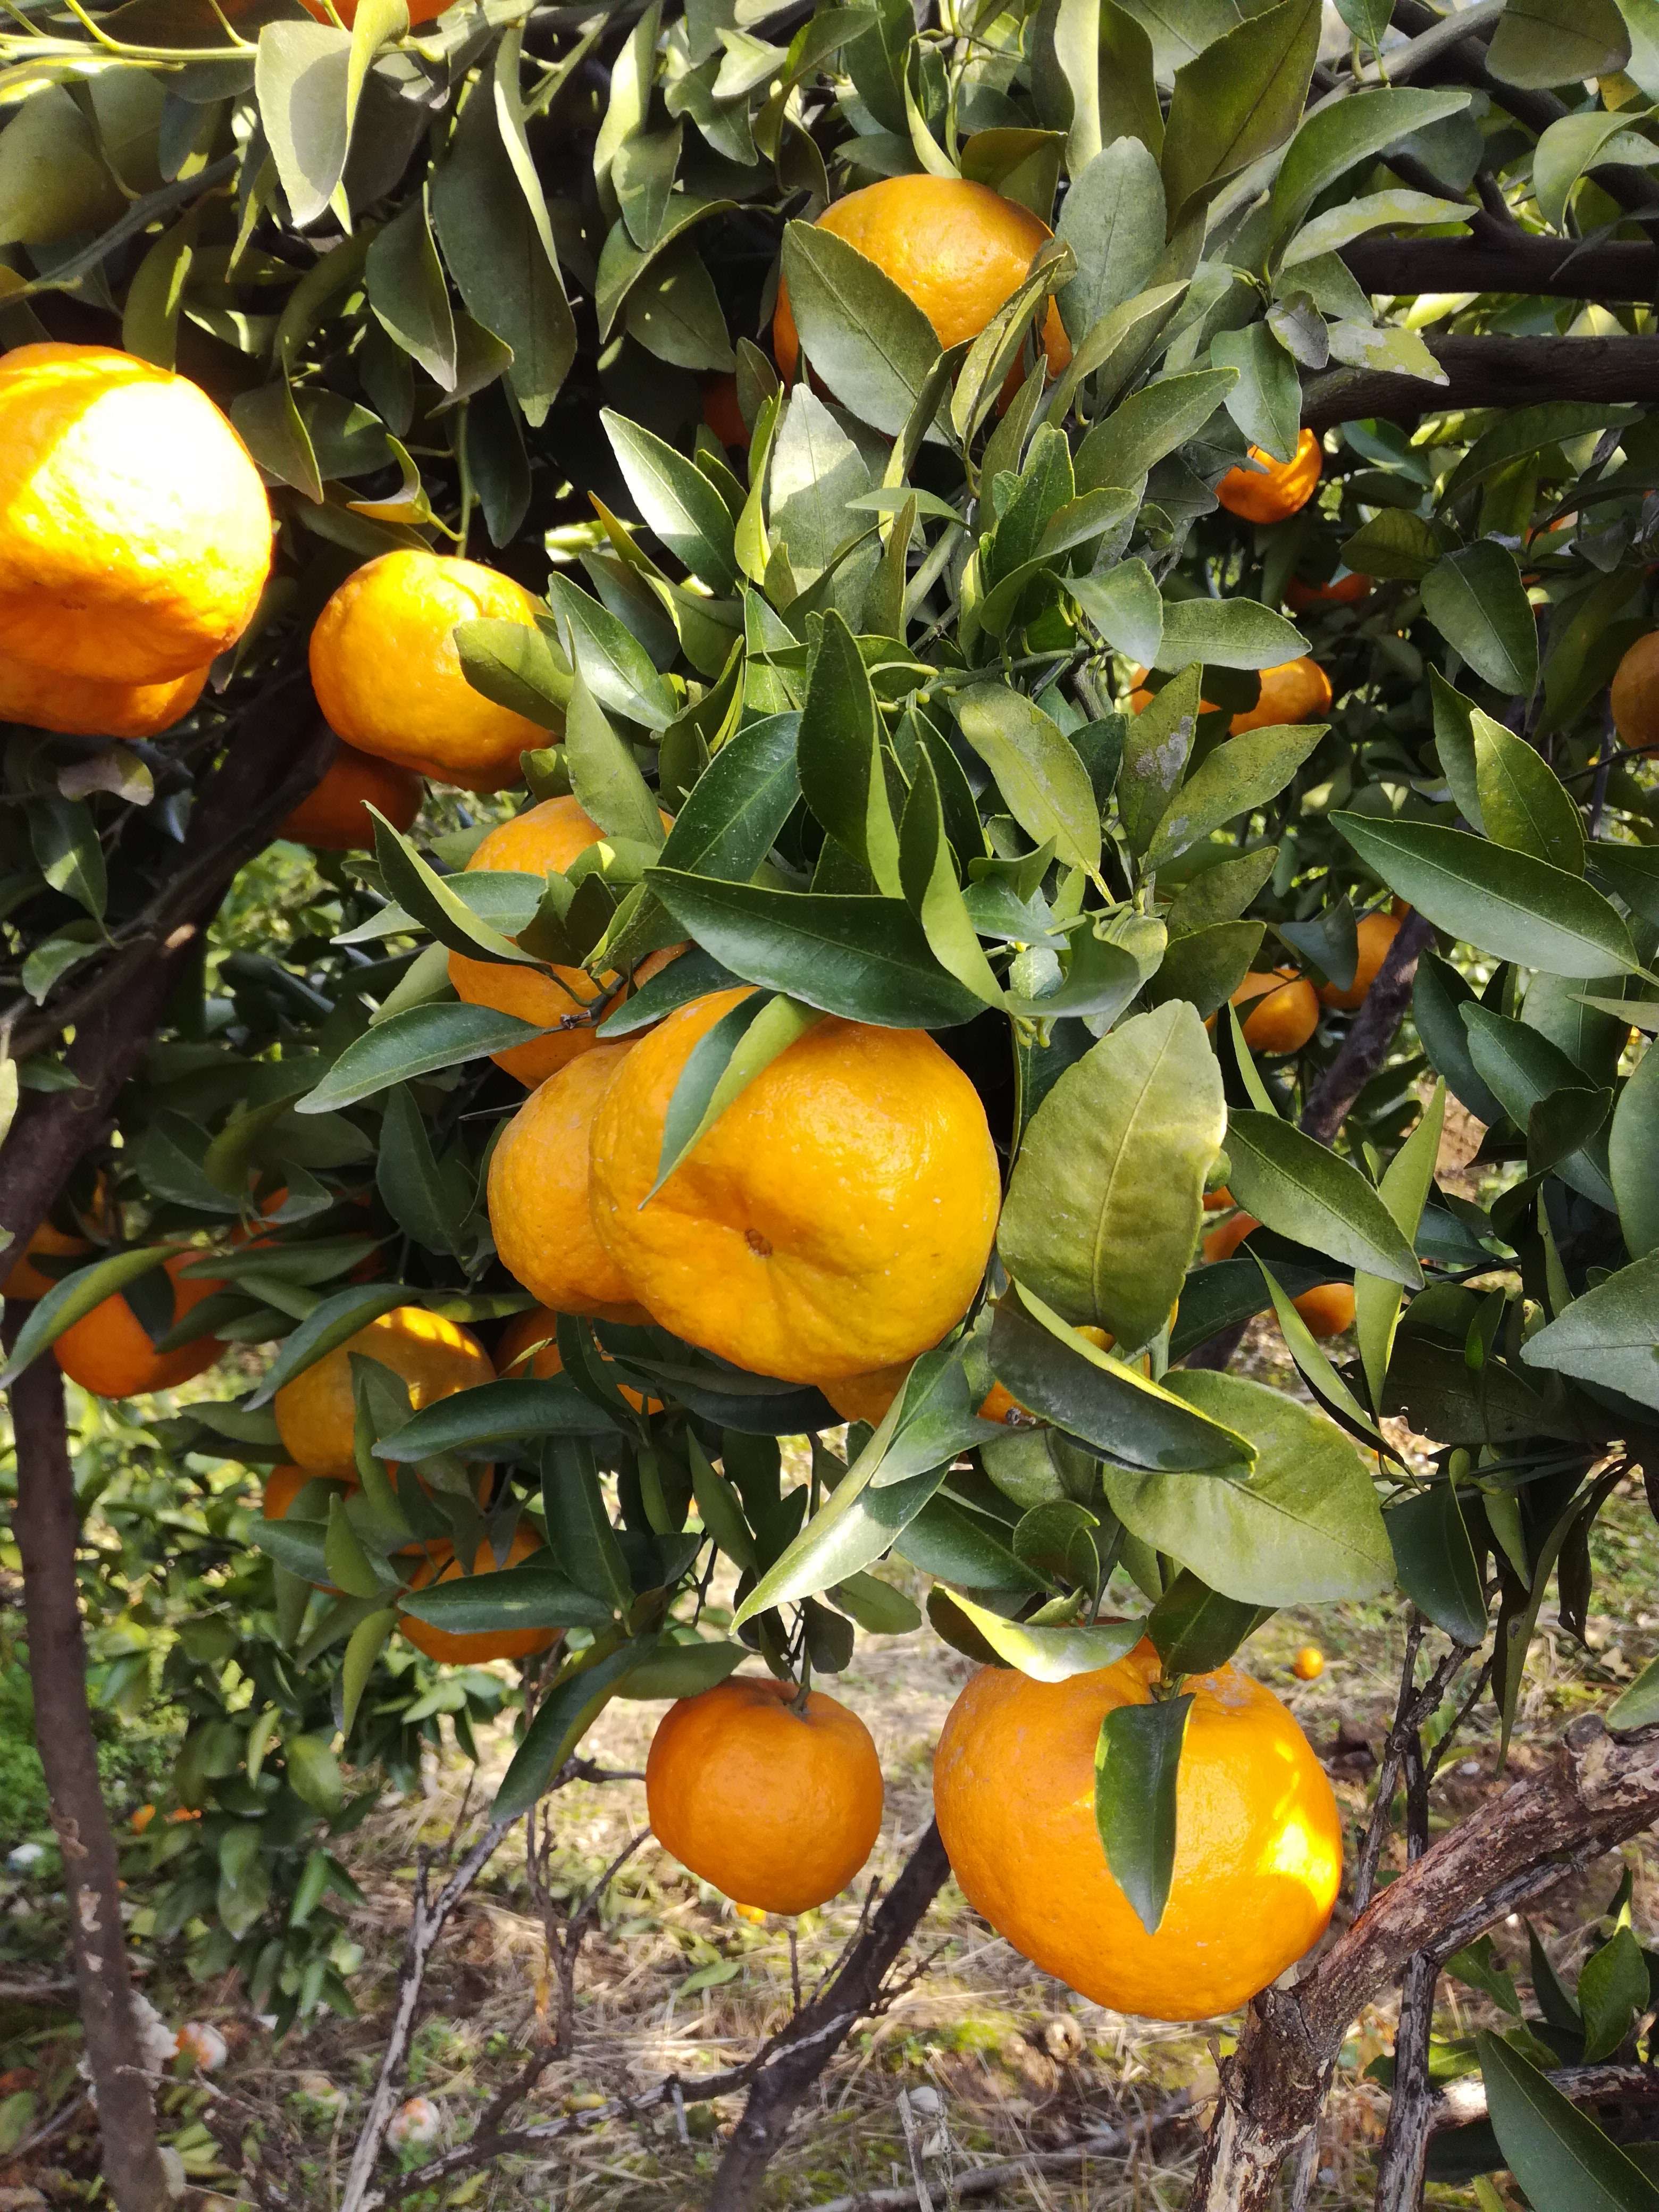 秭归脐橙产于湖北省宜昌市秭归县，[15072543352微信同号]现在上市品种有二月红/伦晚/血橙/纽荷尔/长红/中华红/井橙/夏橙》系列，一年四季都有脐橙销售